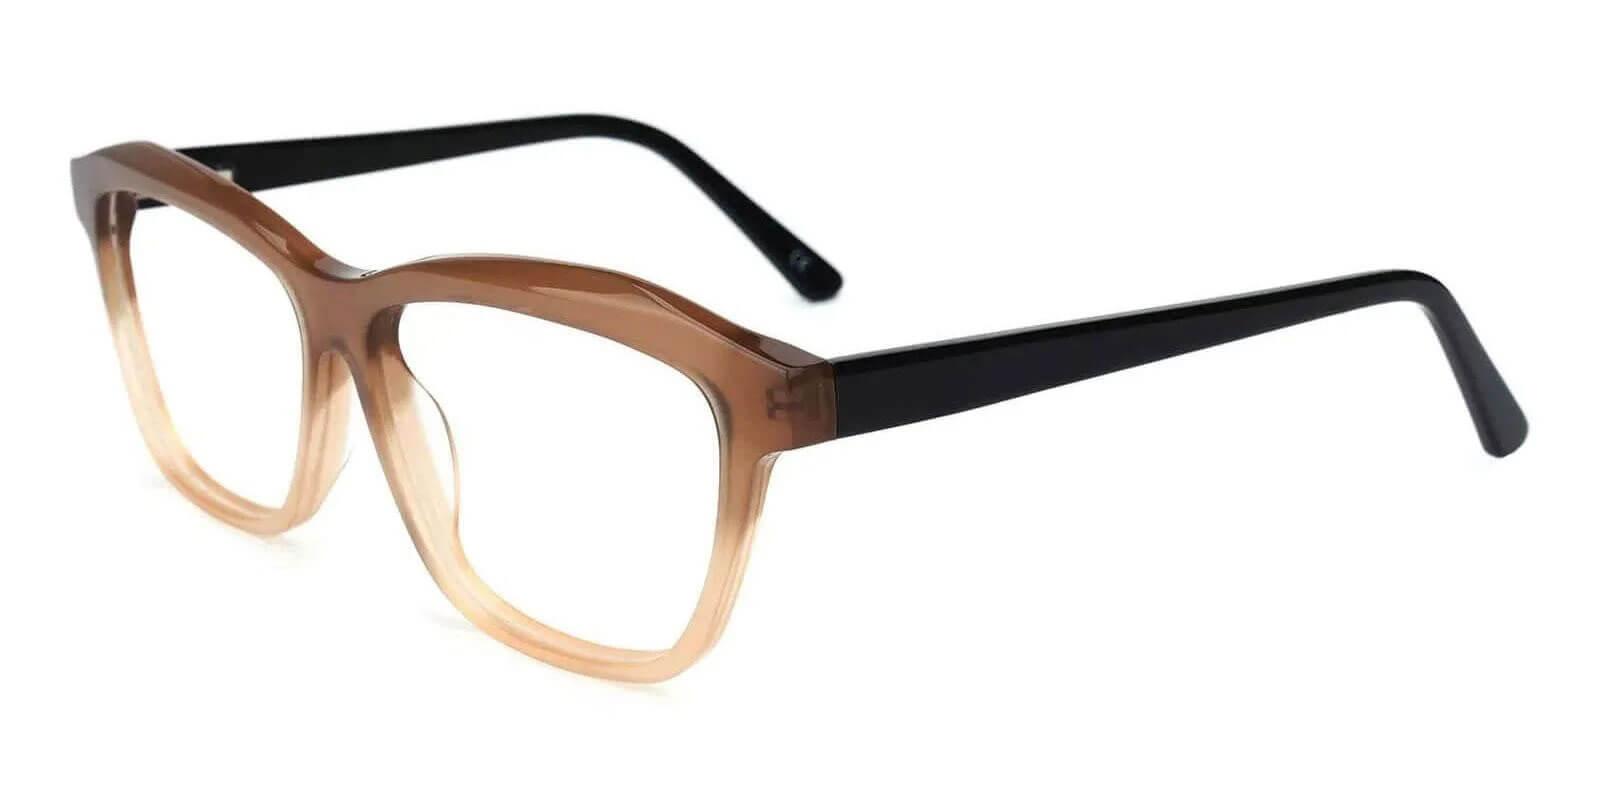 Sonia Cream Acetate SpringHinges , UniversalBridgeFit , Eyeglasses Frames from ABBE Glasses